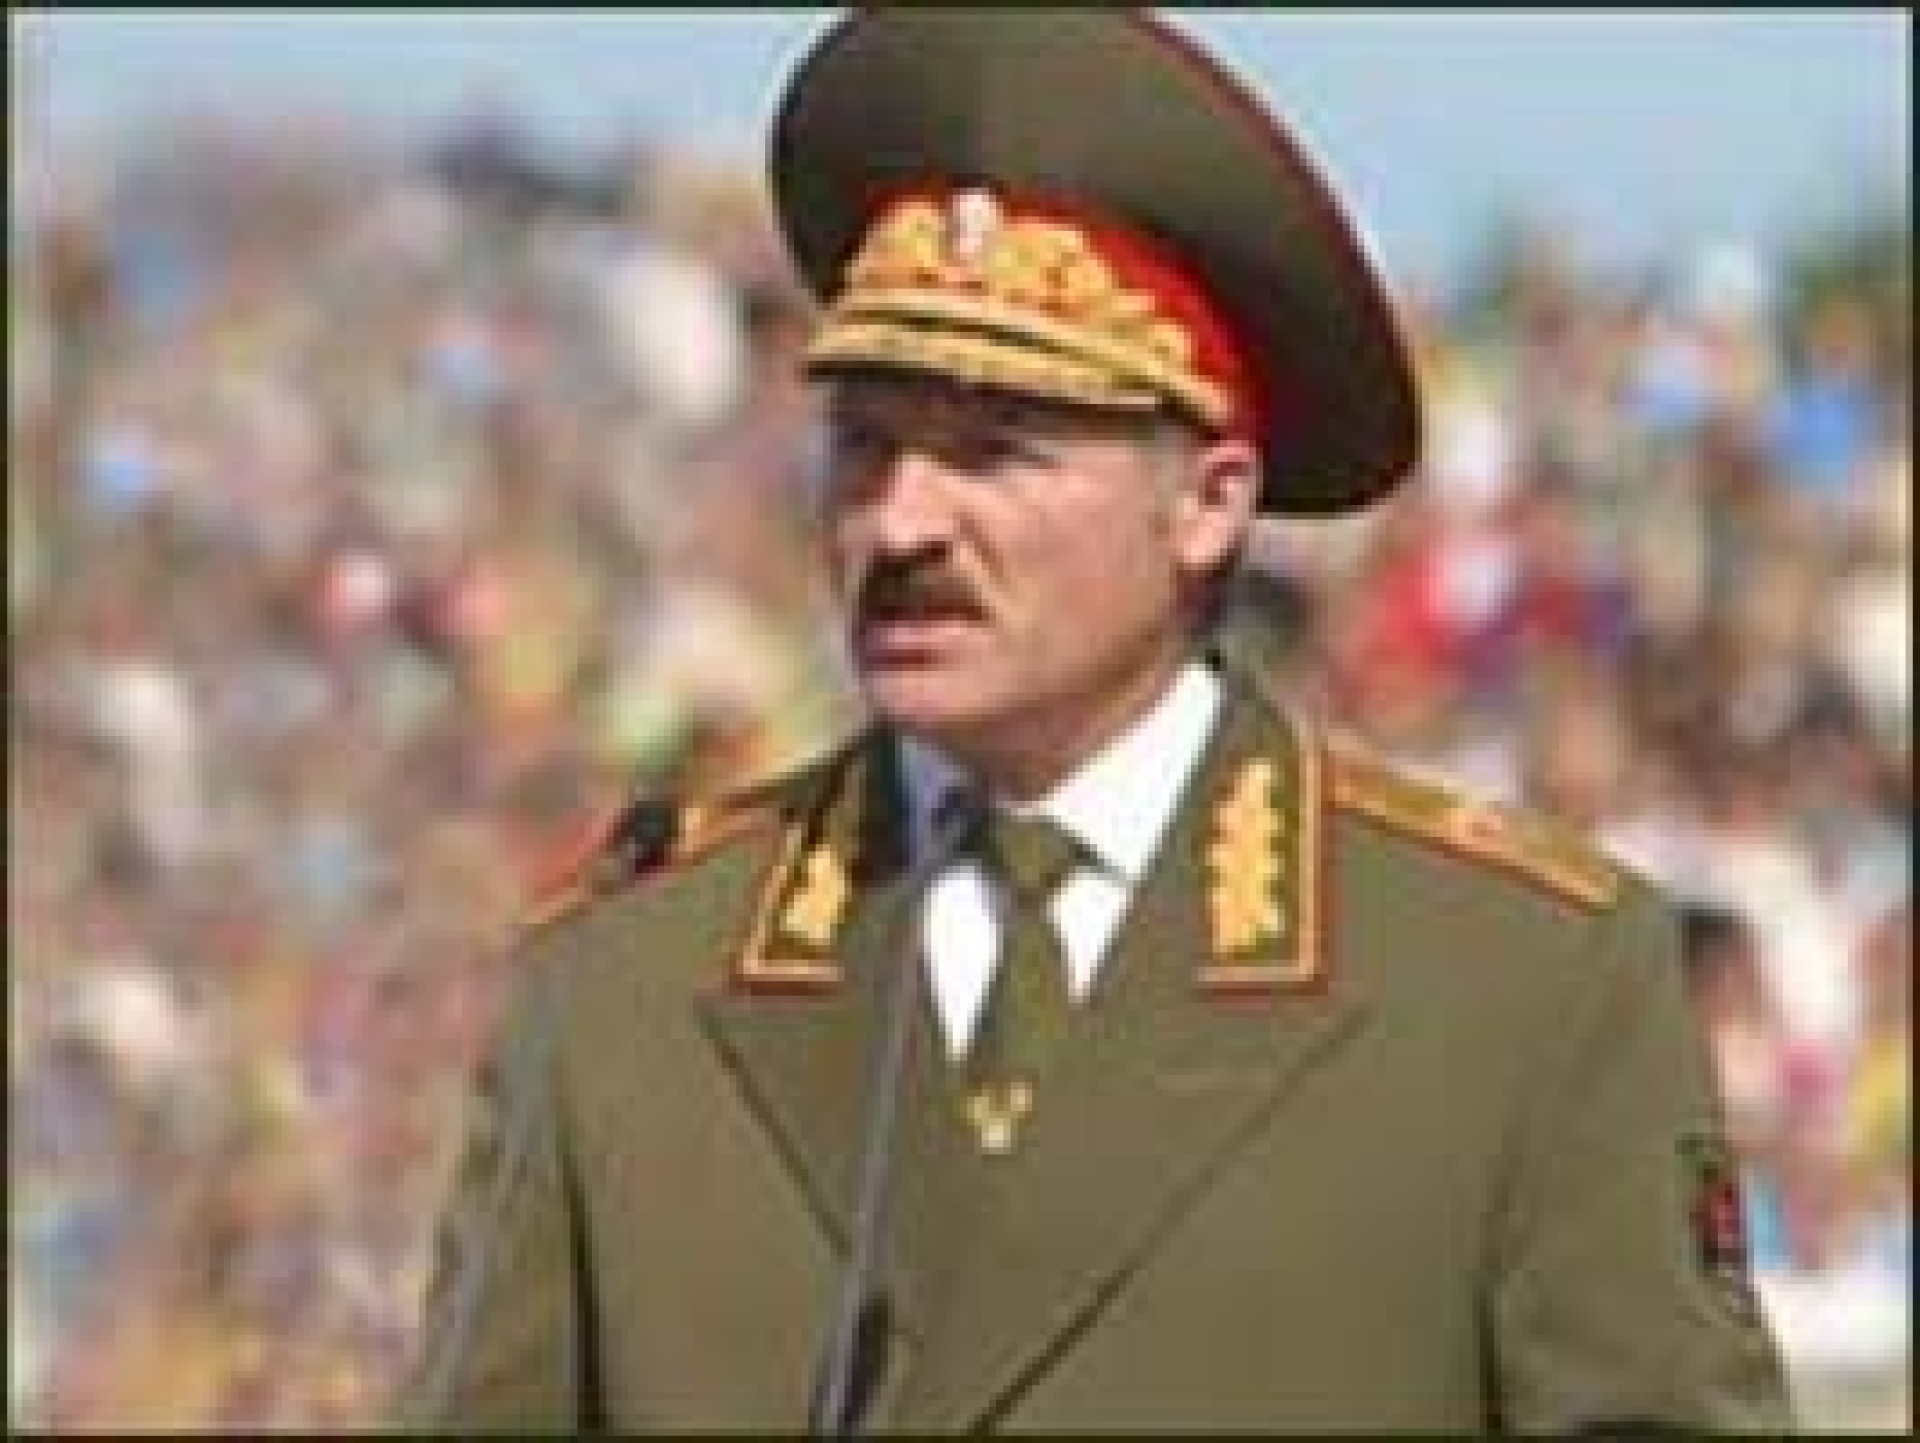 Лукашенко - победа "на крови"